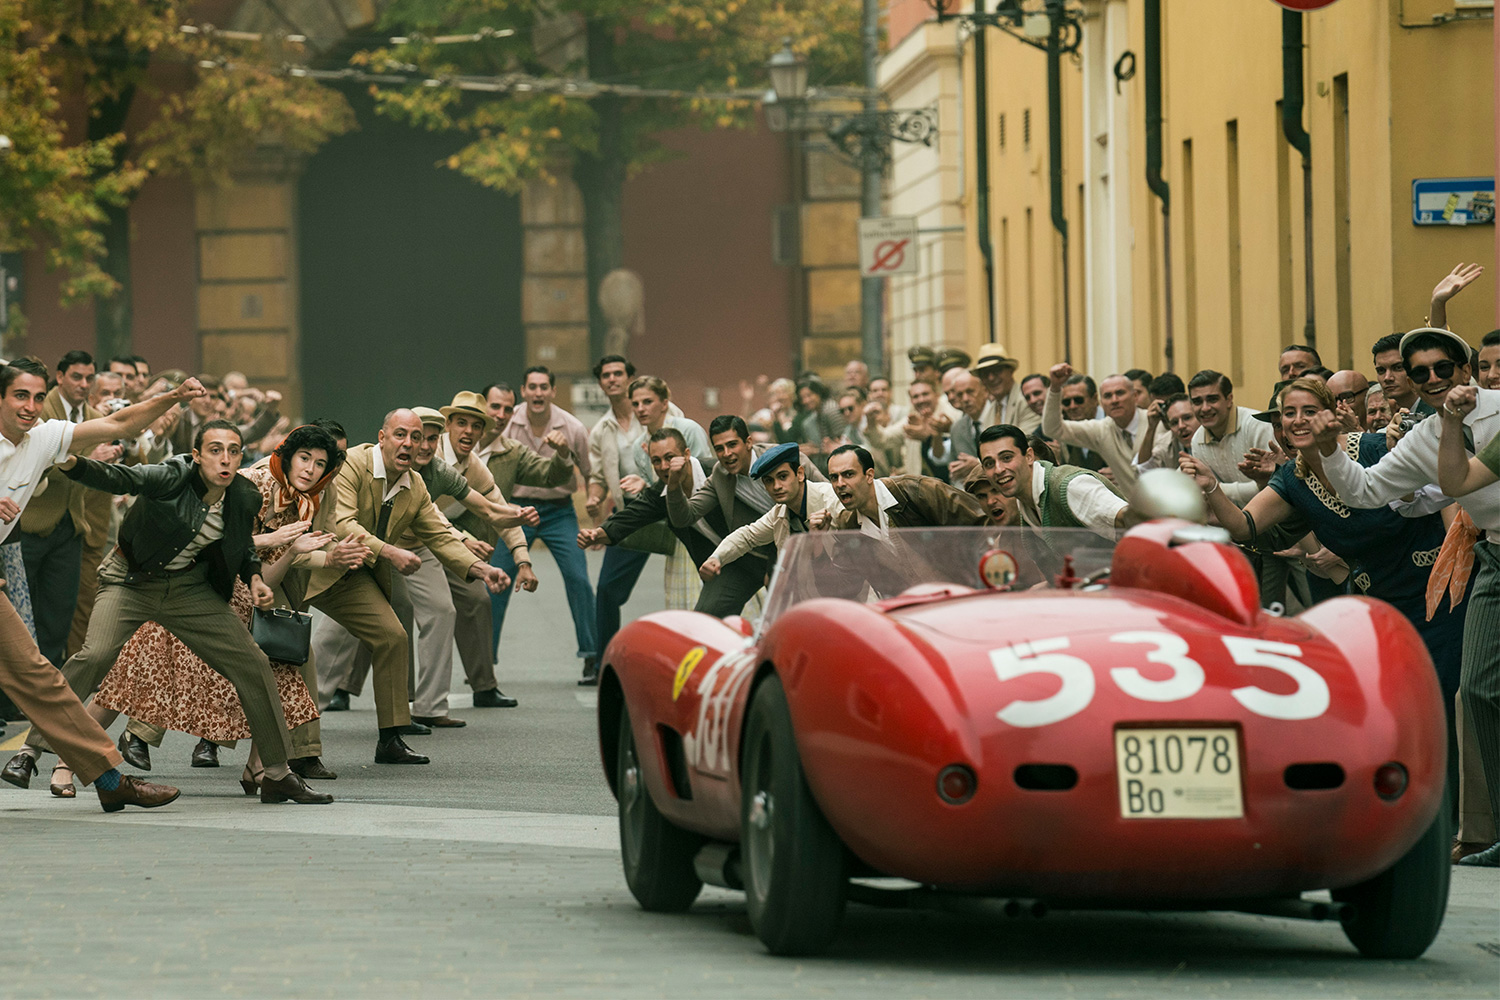 A Ferrari driving down the street in Michael Mann's movie "Ferrari"